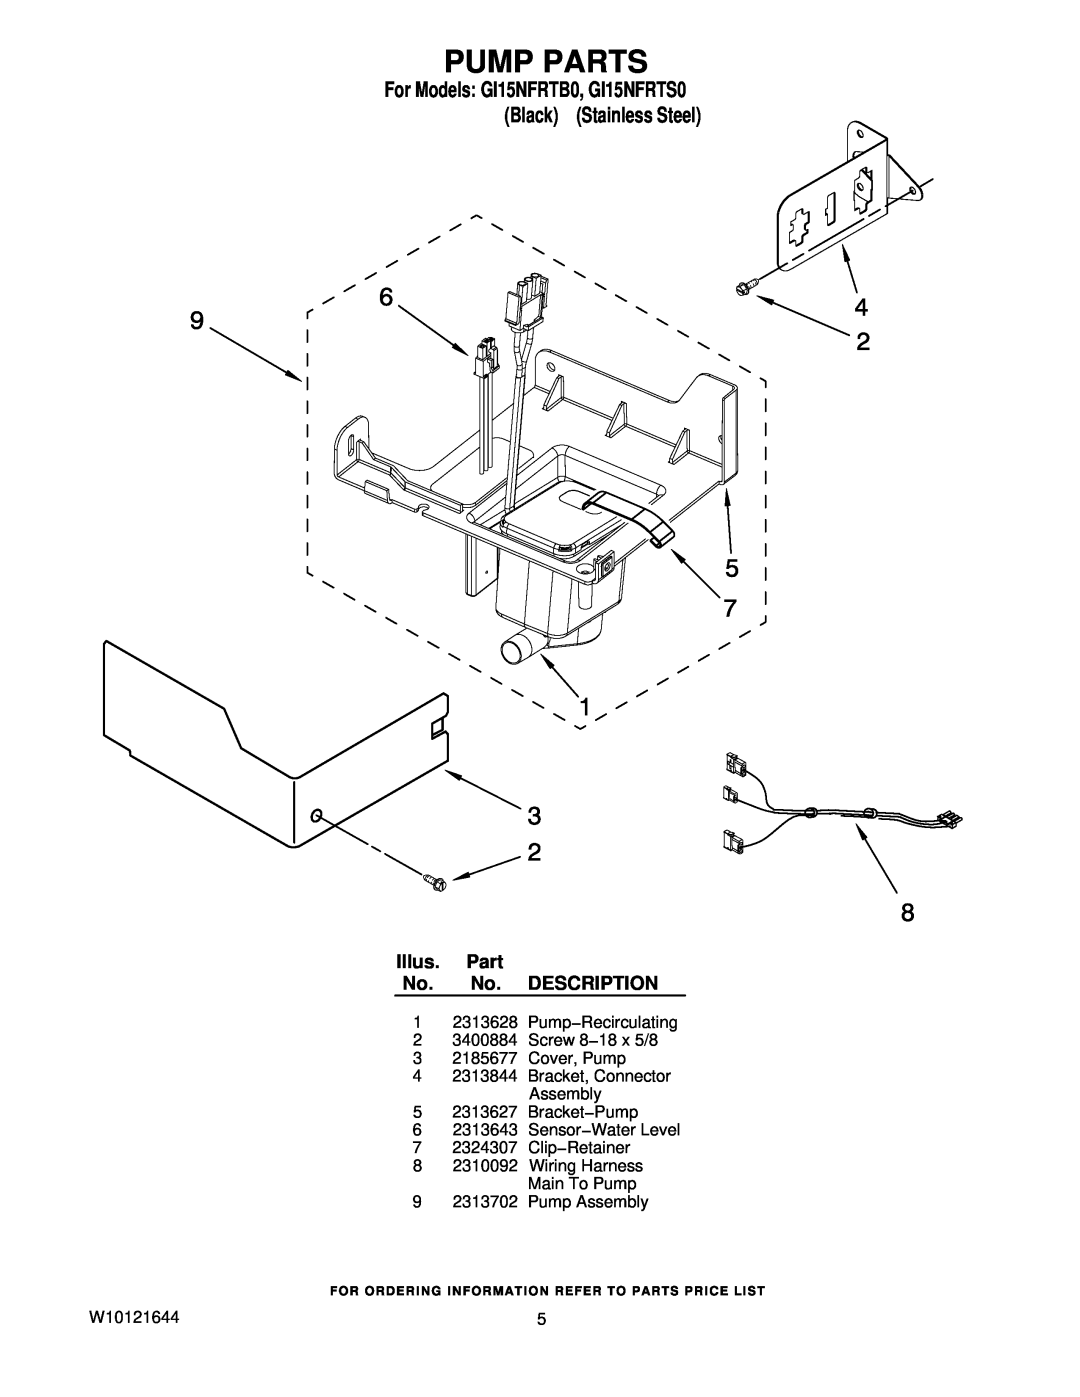 Whirlpool GI15NFRTB0 manual Pump Parts, Illus. Part No. No. DESCRIPTION, Pump−Recirculating, Clip−Retainer, Pump Assembly 